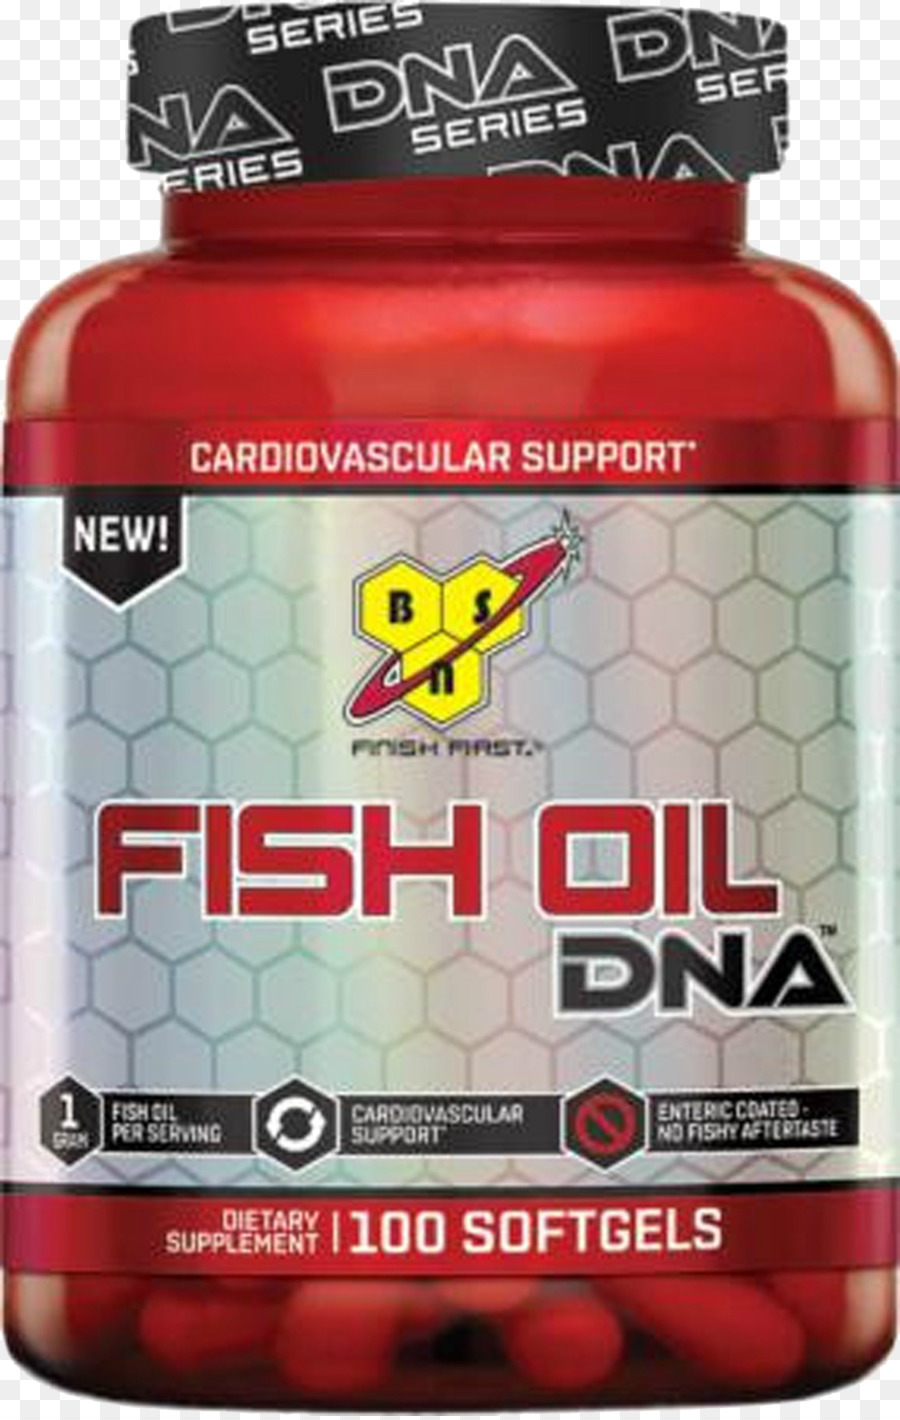 Nahrungsergänzung von BSN DNA-Fisch-Öl-Omega-3-Fettsäuren Lebertran - jinlong Fischöl